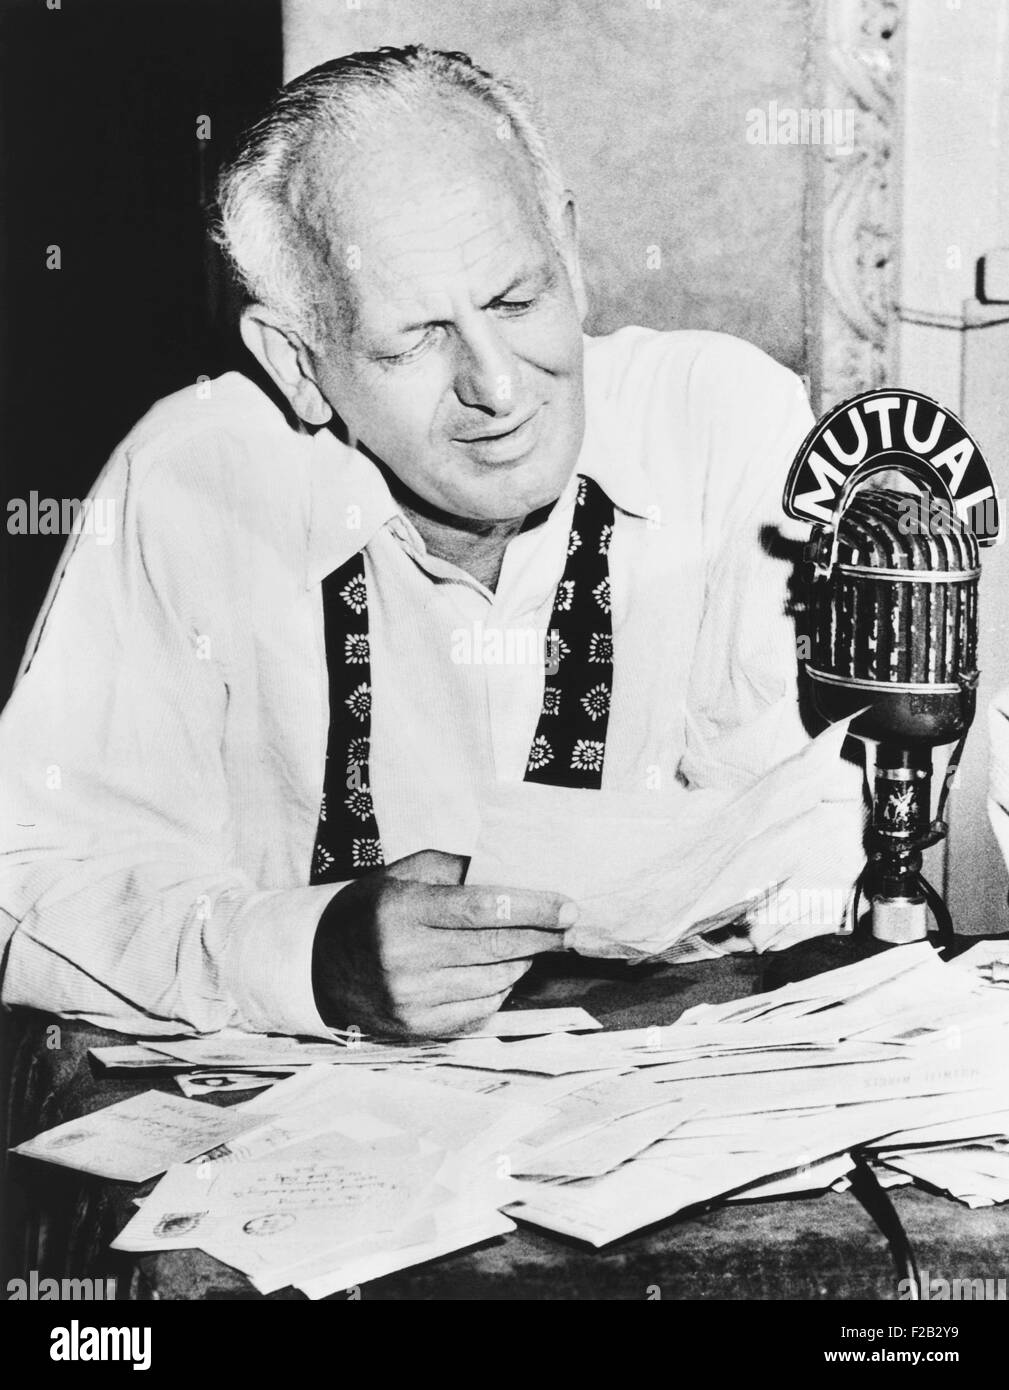 Gabriel Heatter, periodista que se convirtió en un reportero de radio y comentarista. Su carrera radiofónica comenzó en 1932 en NYC's WOR Foto de stock